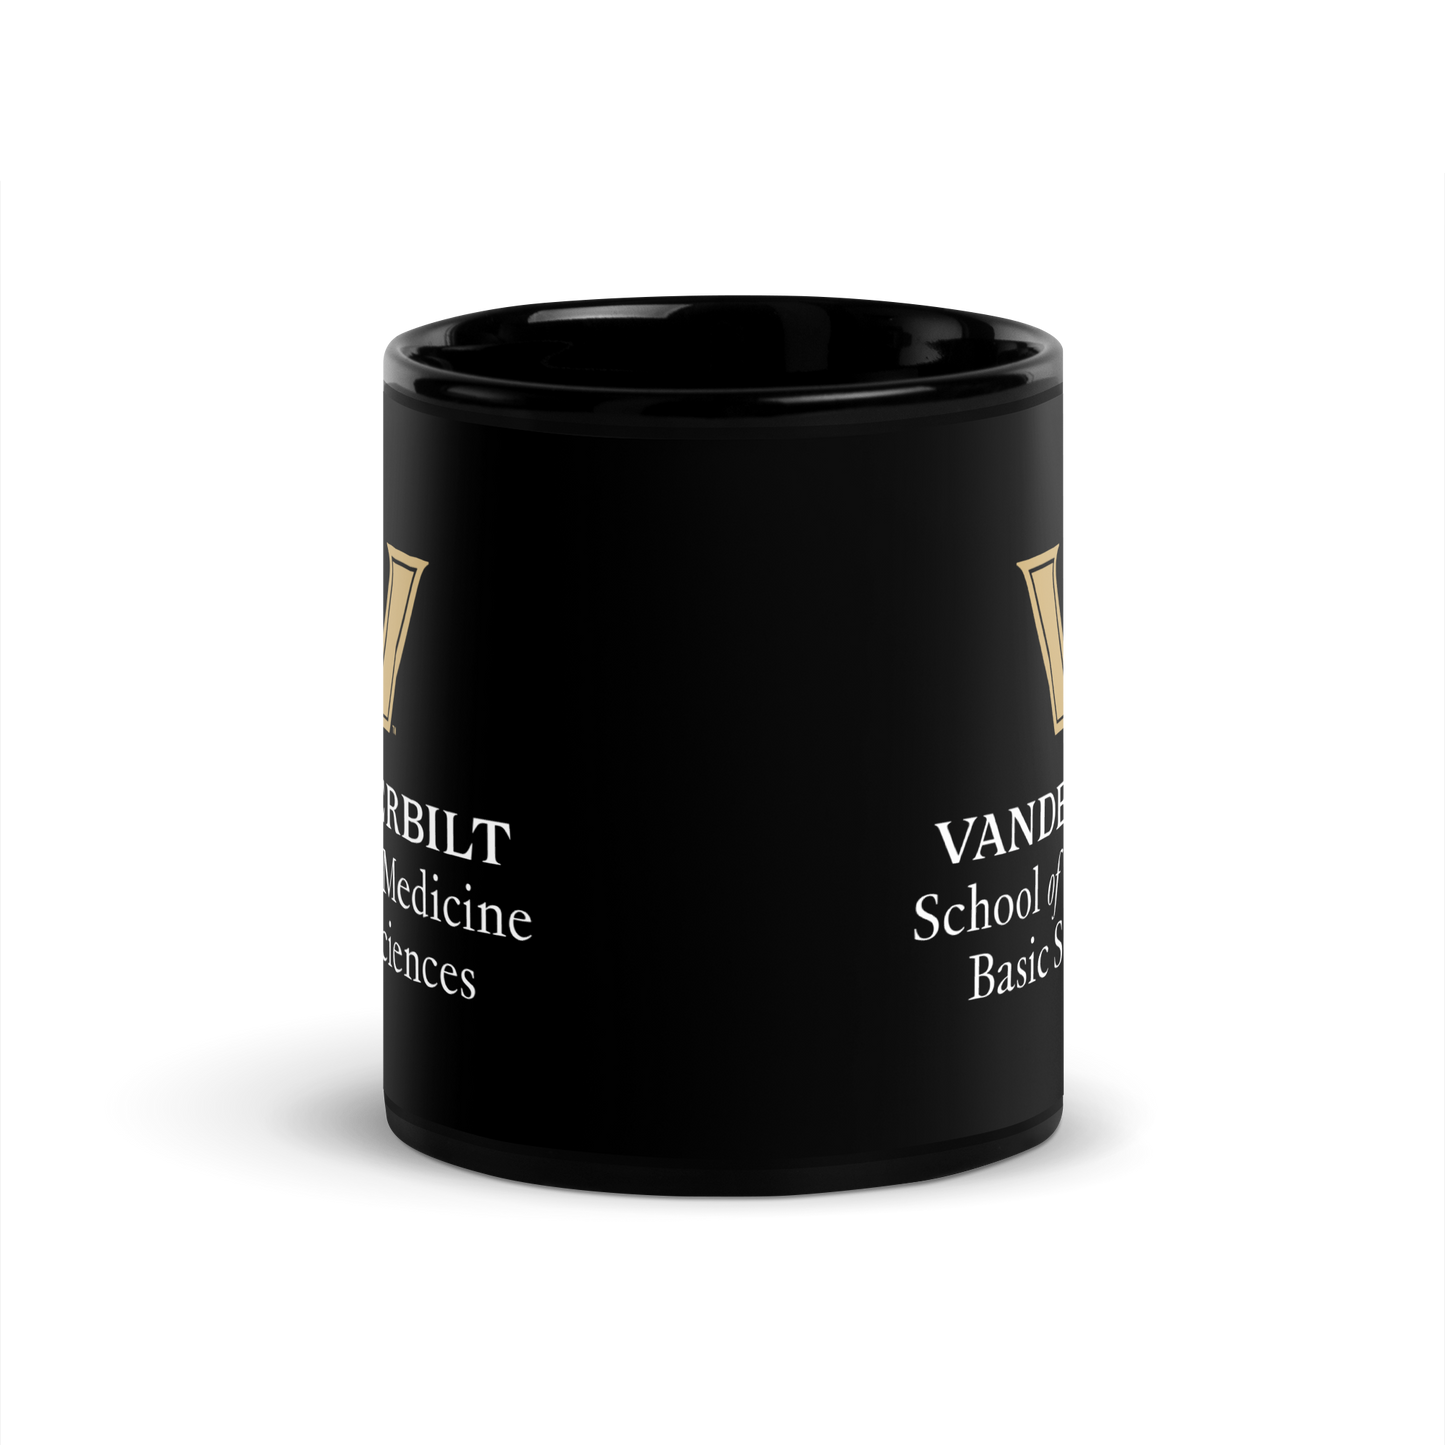 VU Basic Sciences Black Glossy Mug